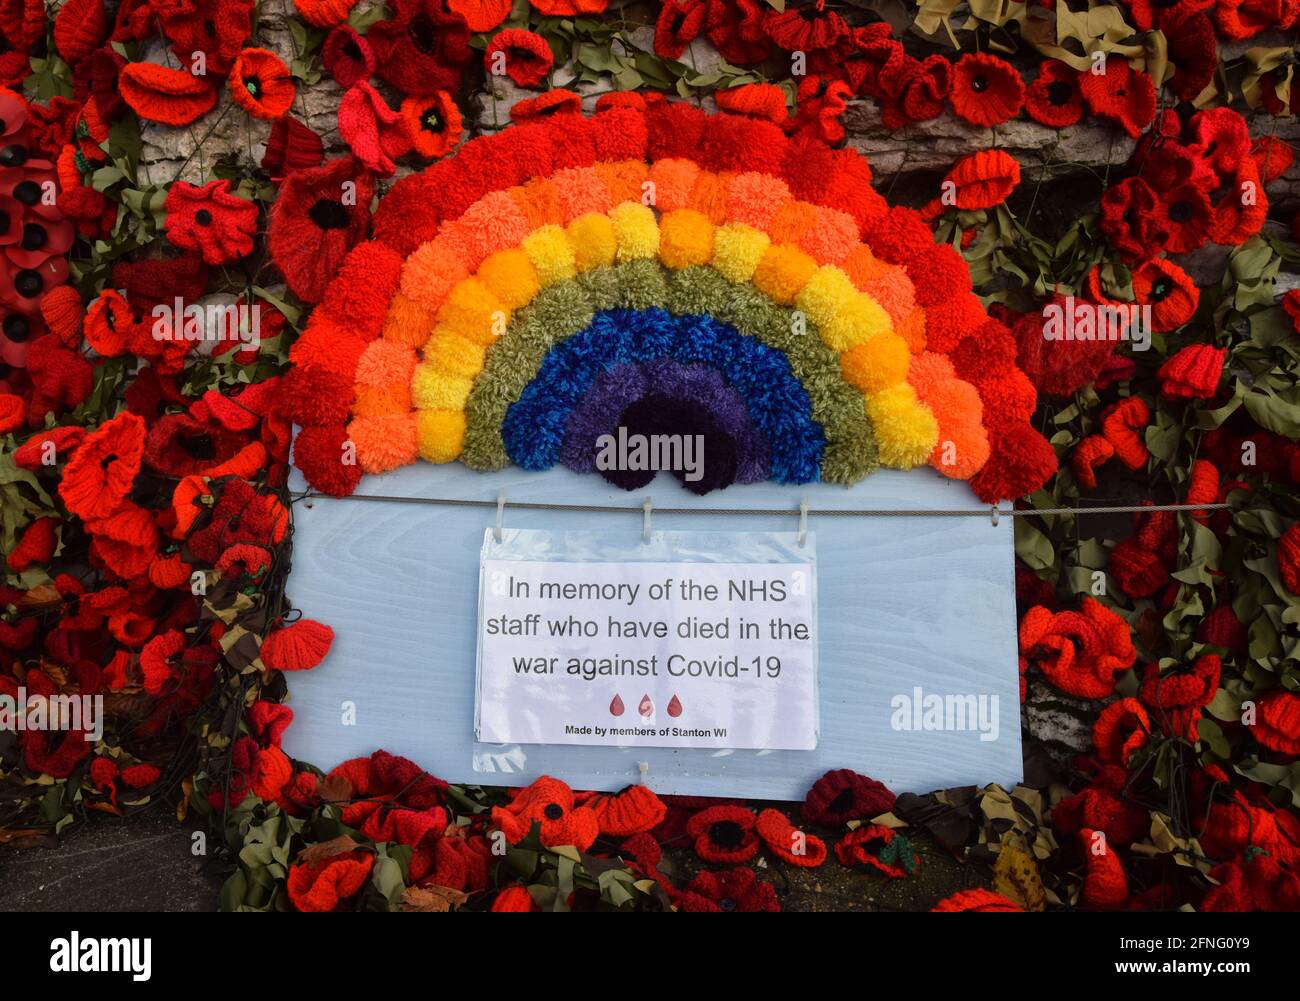 Hommage au NHS sur le mémorial de guerre couvert de coquelicots faits à la main, 2020, suffolk, angleterre, royaume-uni Banque D'Images